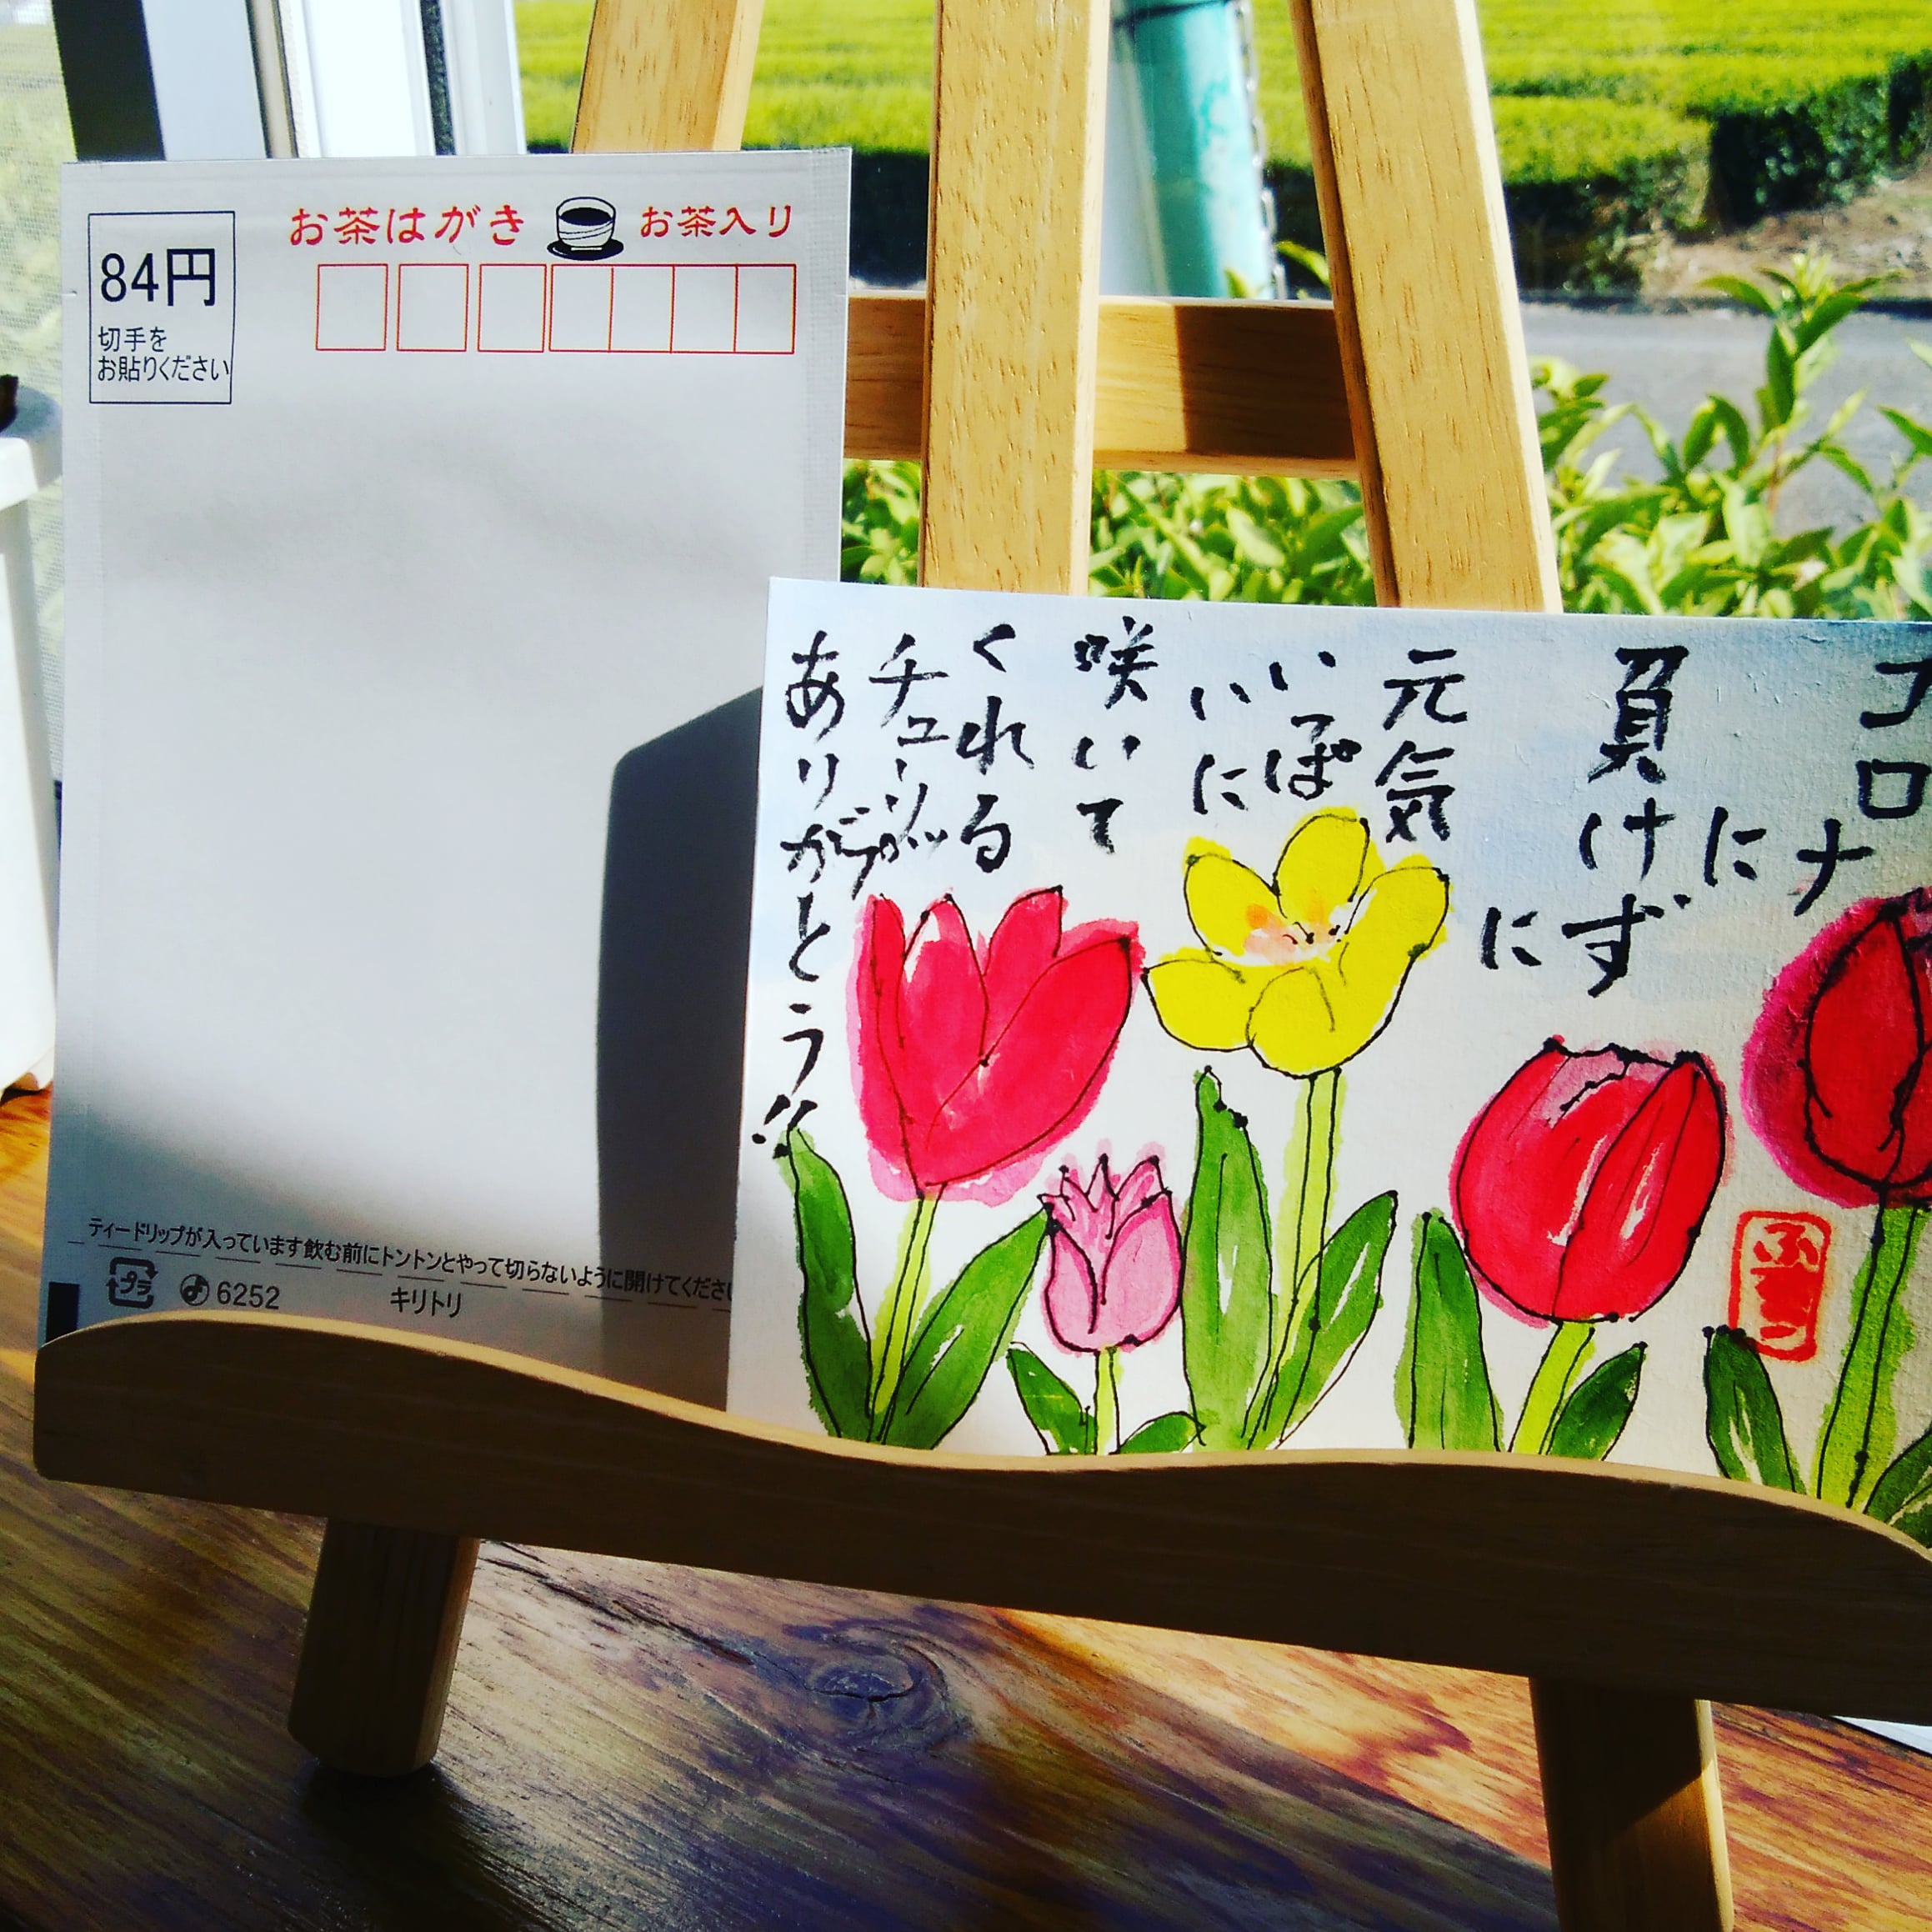 福岡県の原様から絵手紙が届きました♪